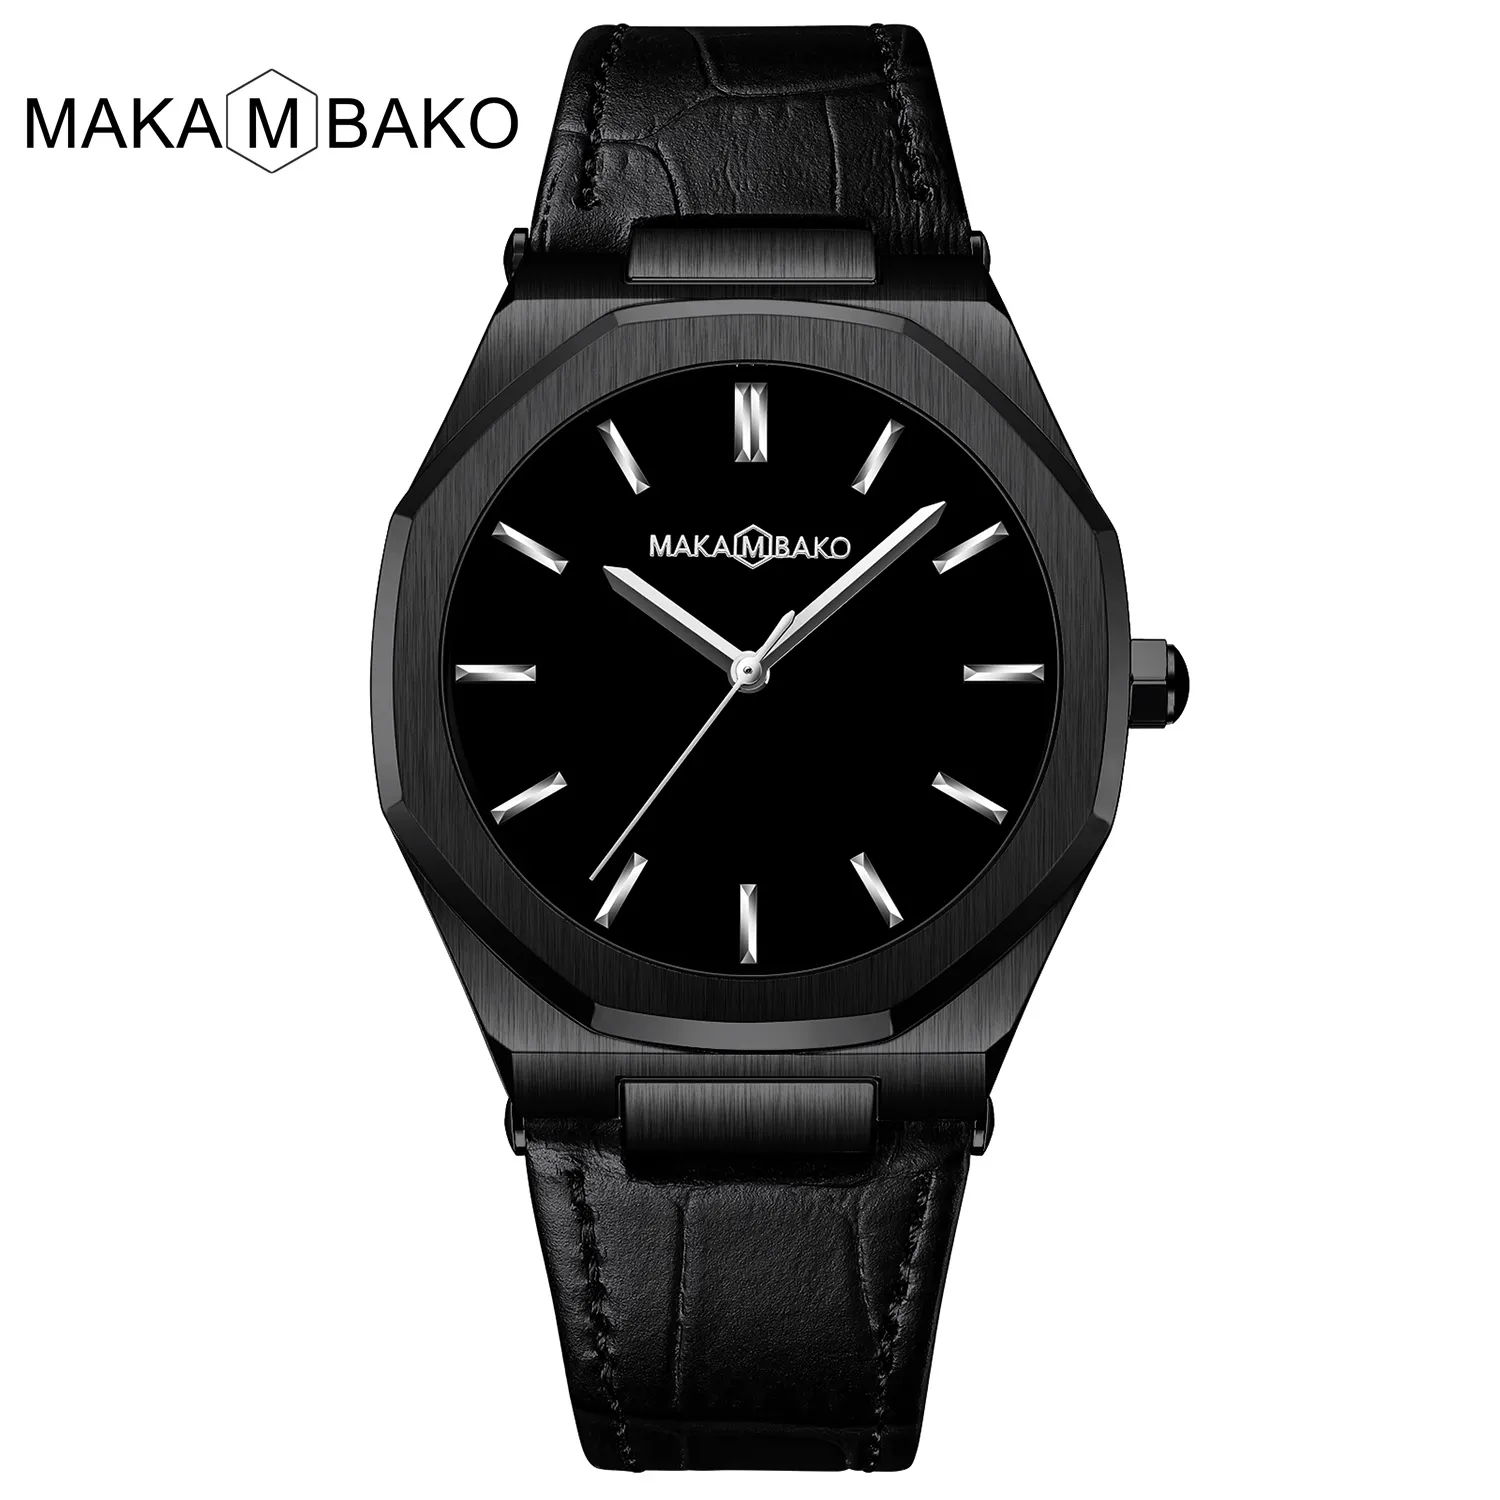 MAKAMBAKO 5015 black gents quartz watch stylish PU leather band water resistant analog display Minimalist wristband watch